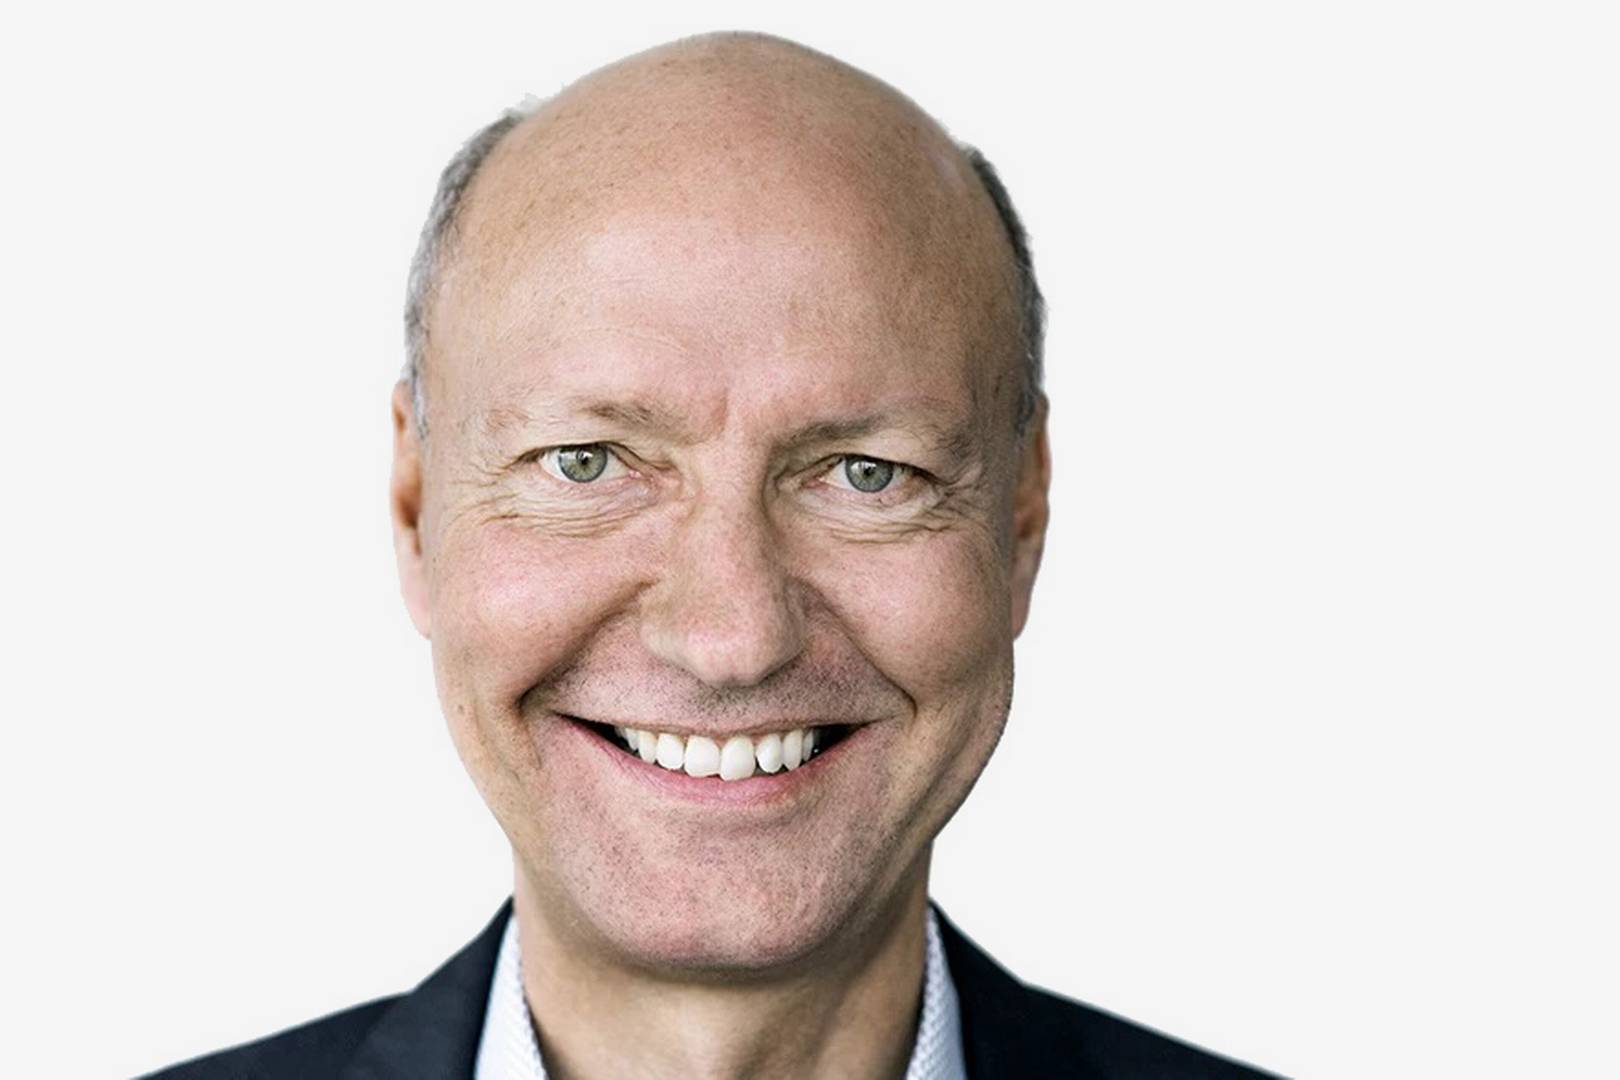 Efter 30 år stopper Danish Crowns driftsdirektør, der fremover vil fokusere på bestyrelsesarbejde. Slagterikoncernen skal ikke finde en afløser, hvorved direktionen bliver reduceret til to mand. (Opdateret)